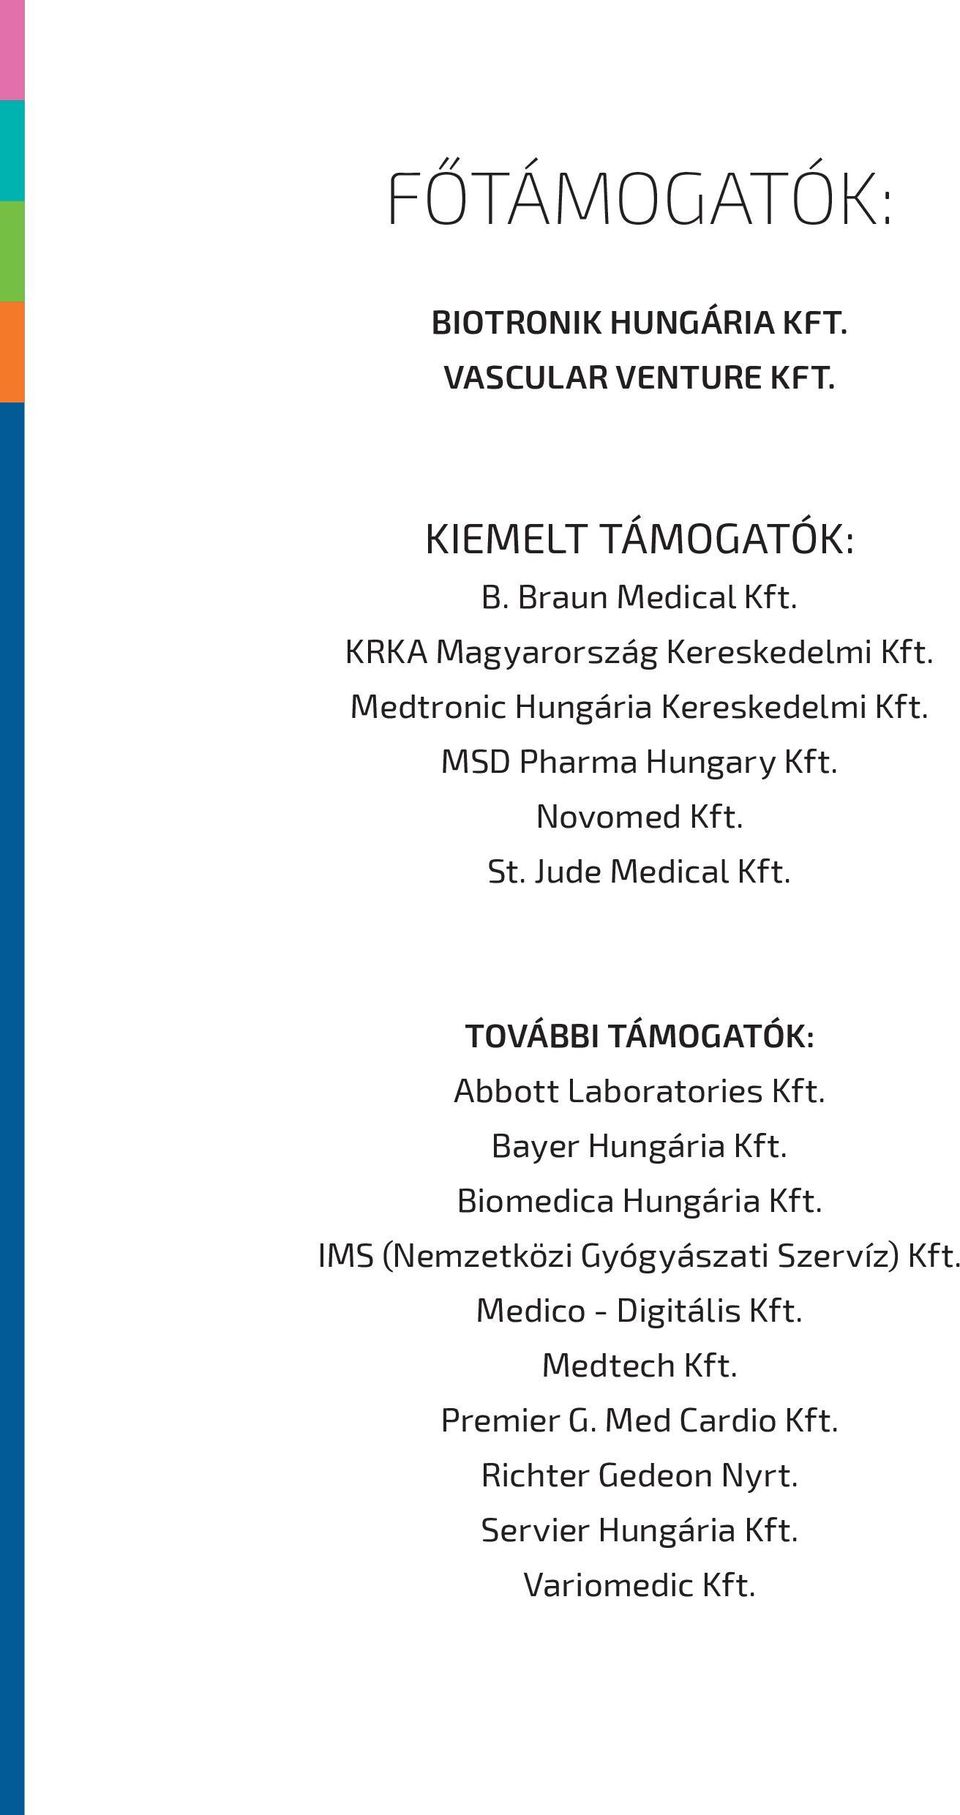 Jude Medical Kft. További támogatók: Abbott Laboratories Kft. Bayer Hungária Kft. Biomedica Hungária Kft.